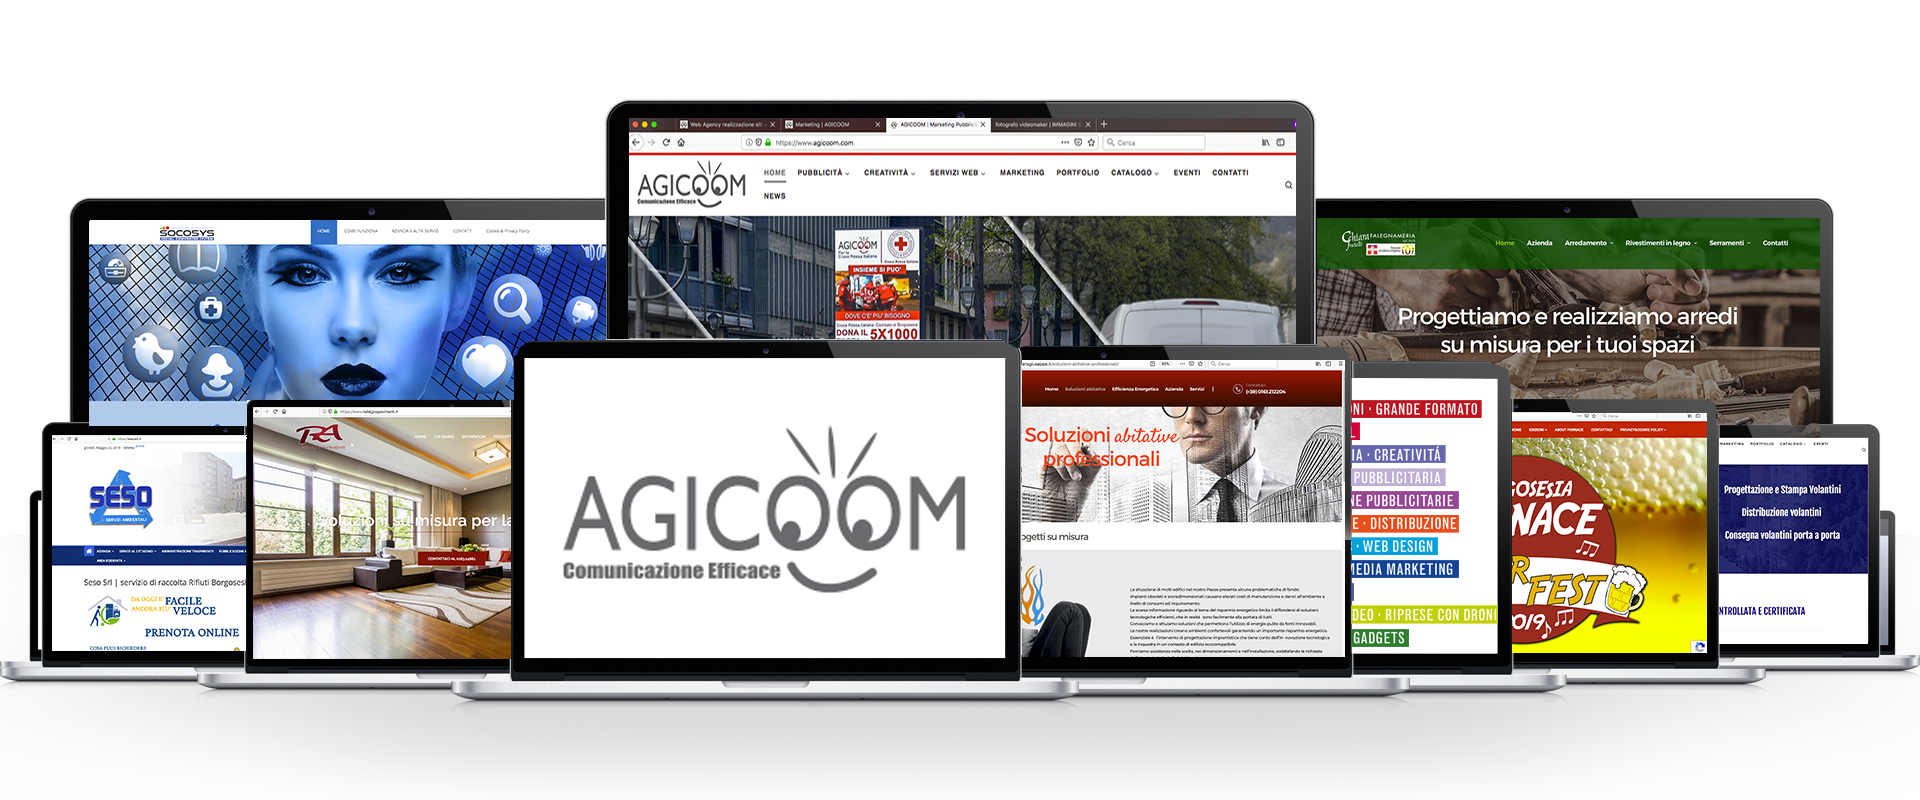 agicoom-realizzazione-sitiweb